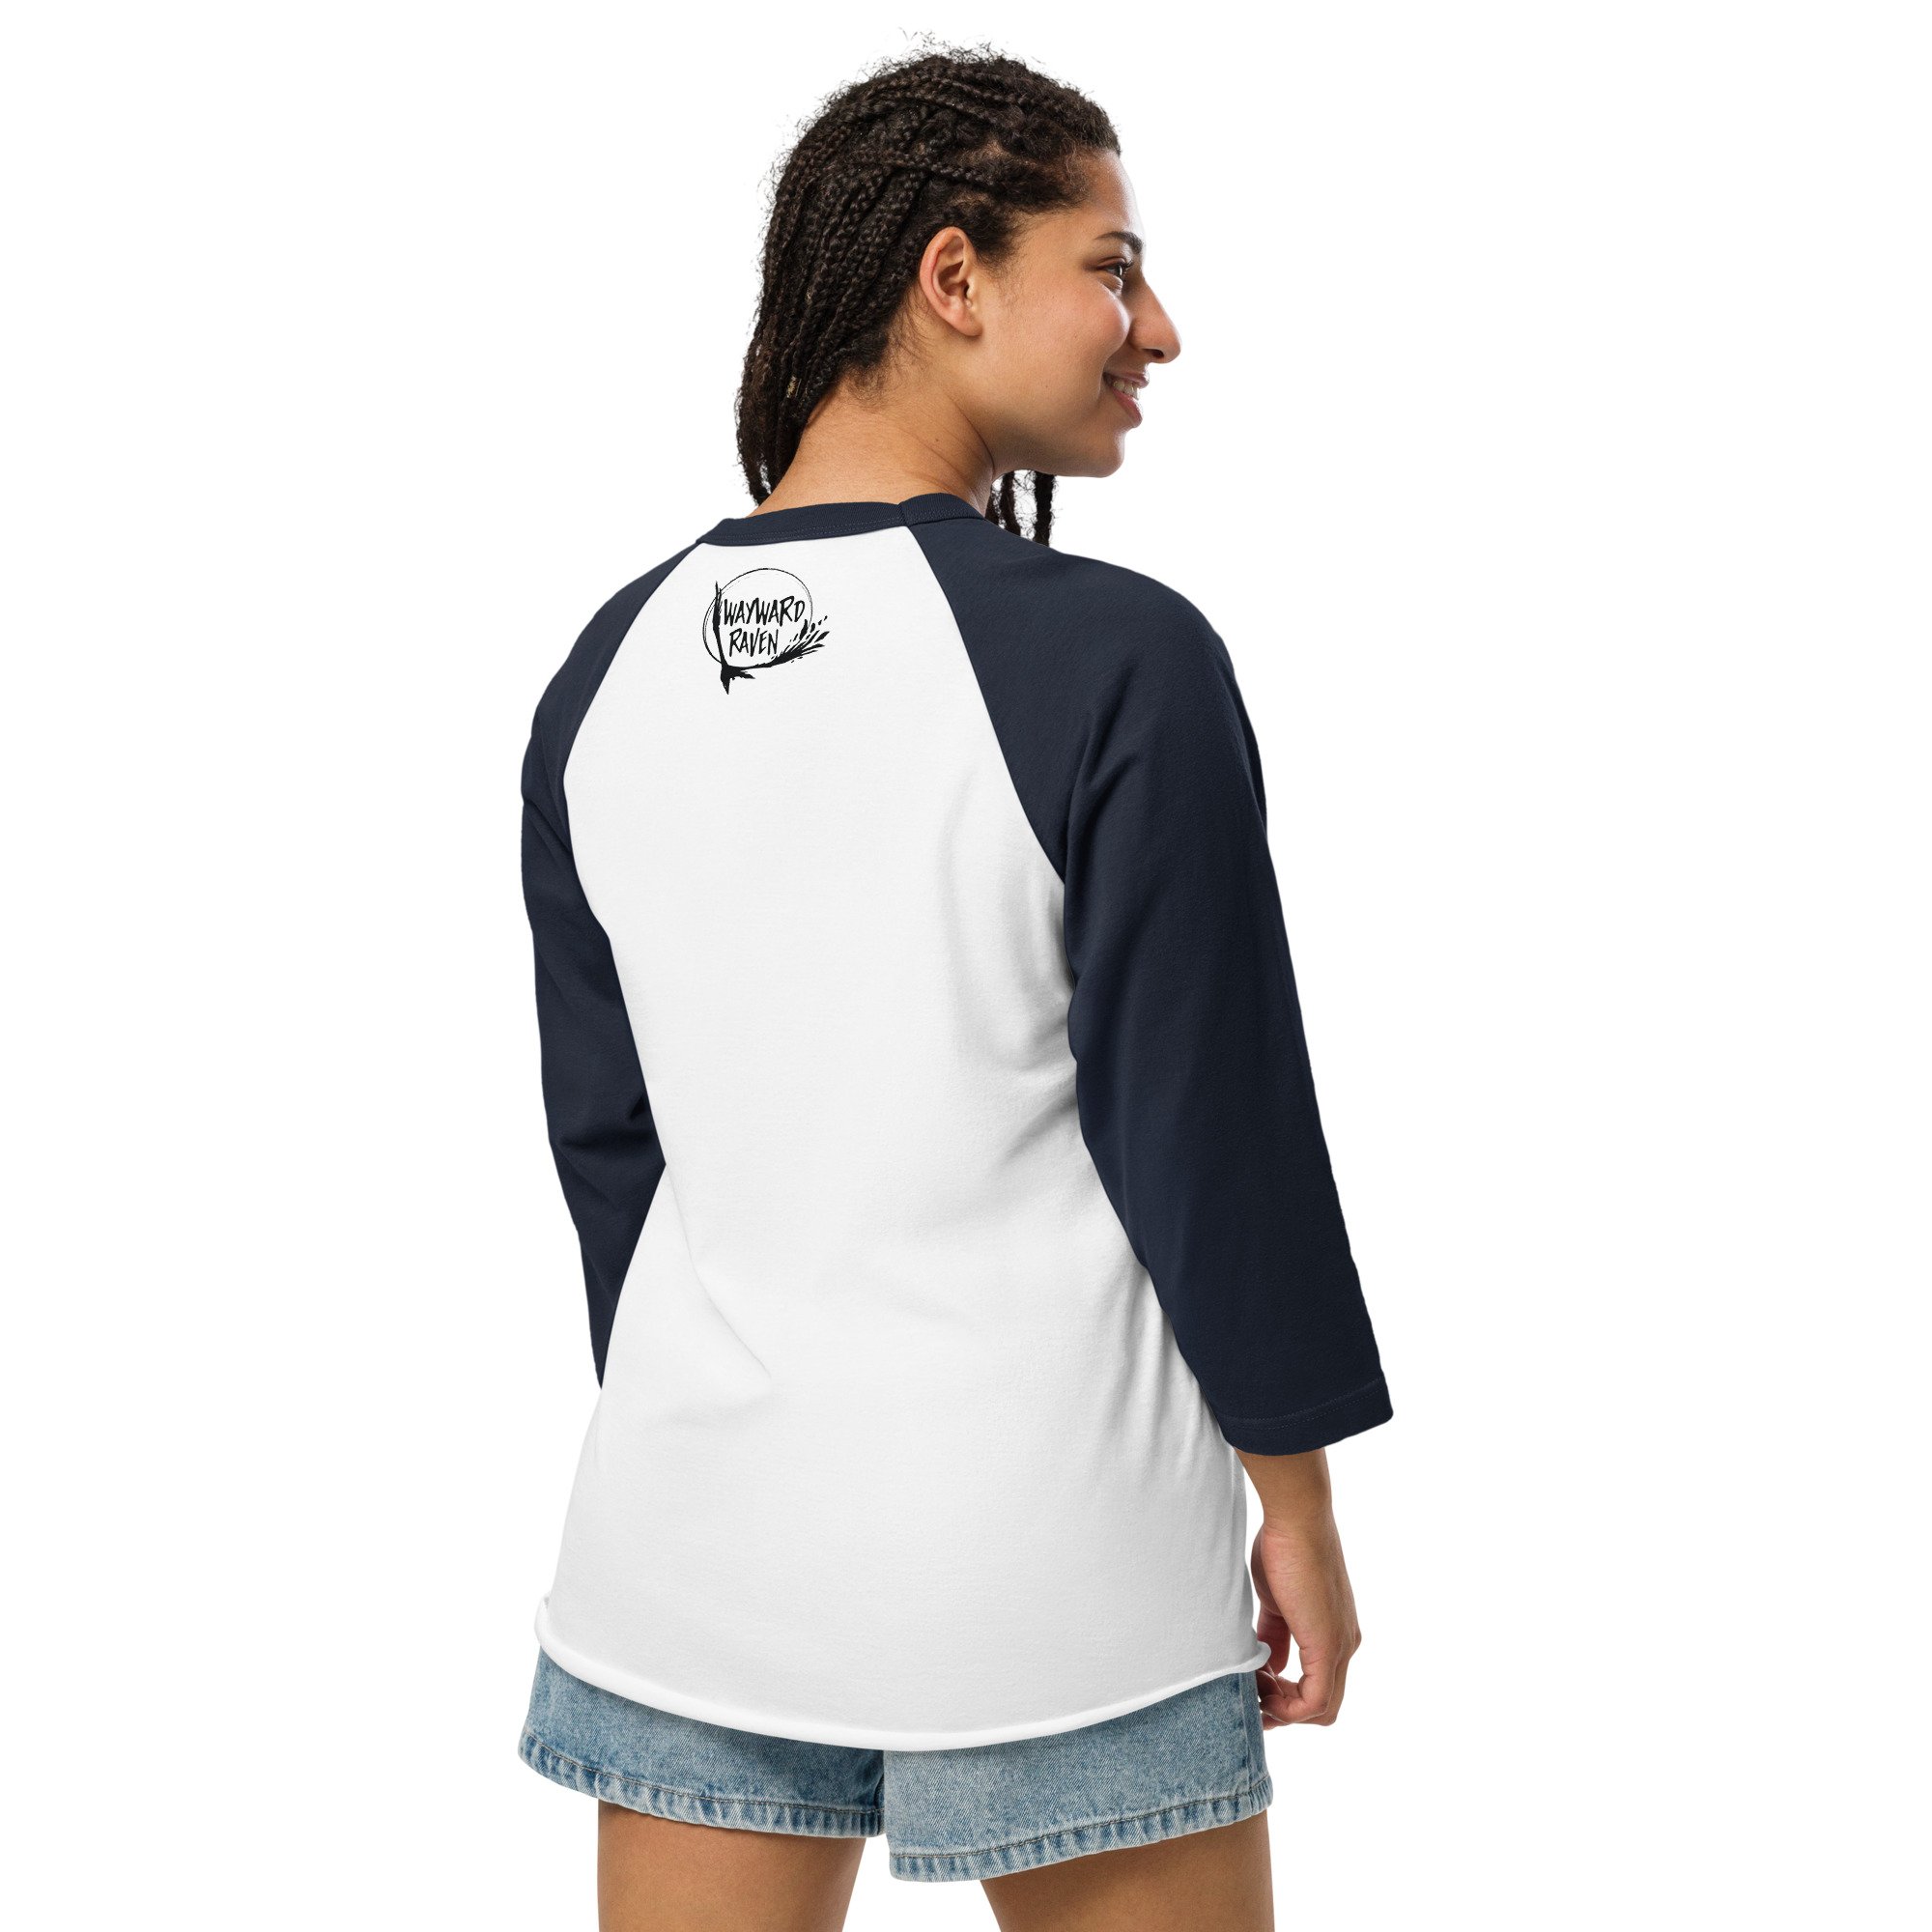 unisex-34-sleeve-raglan-shirt-white-navy-back-65fdcb001eacc.jpg